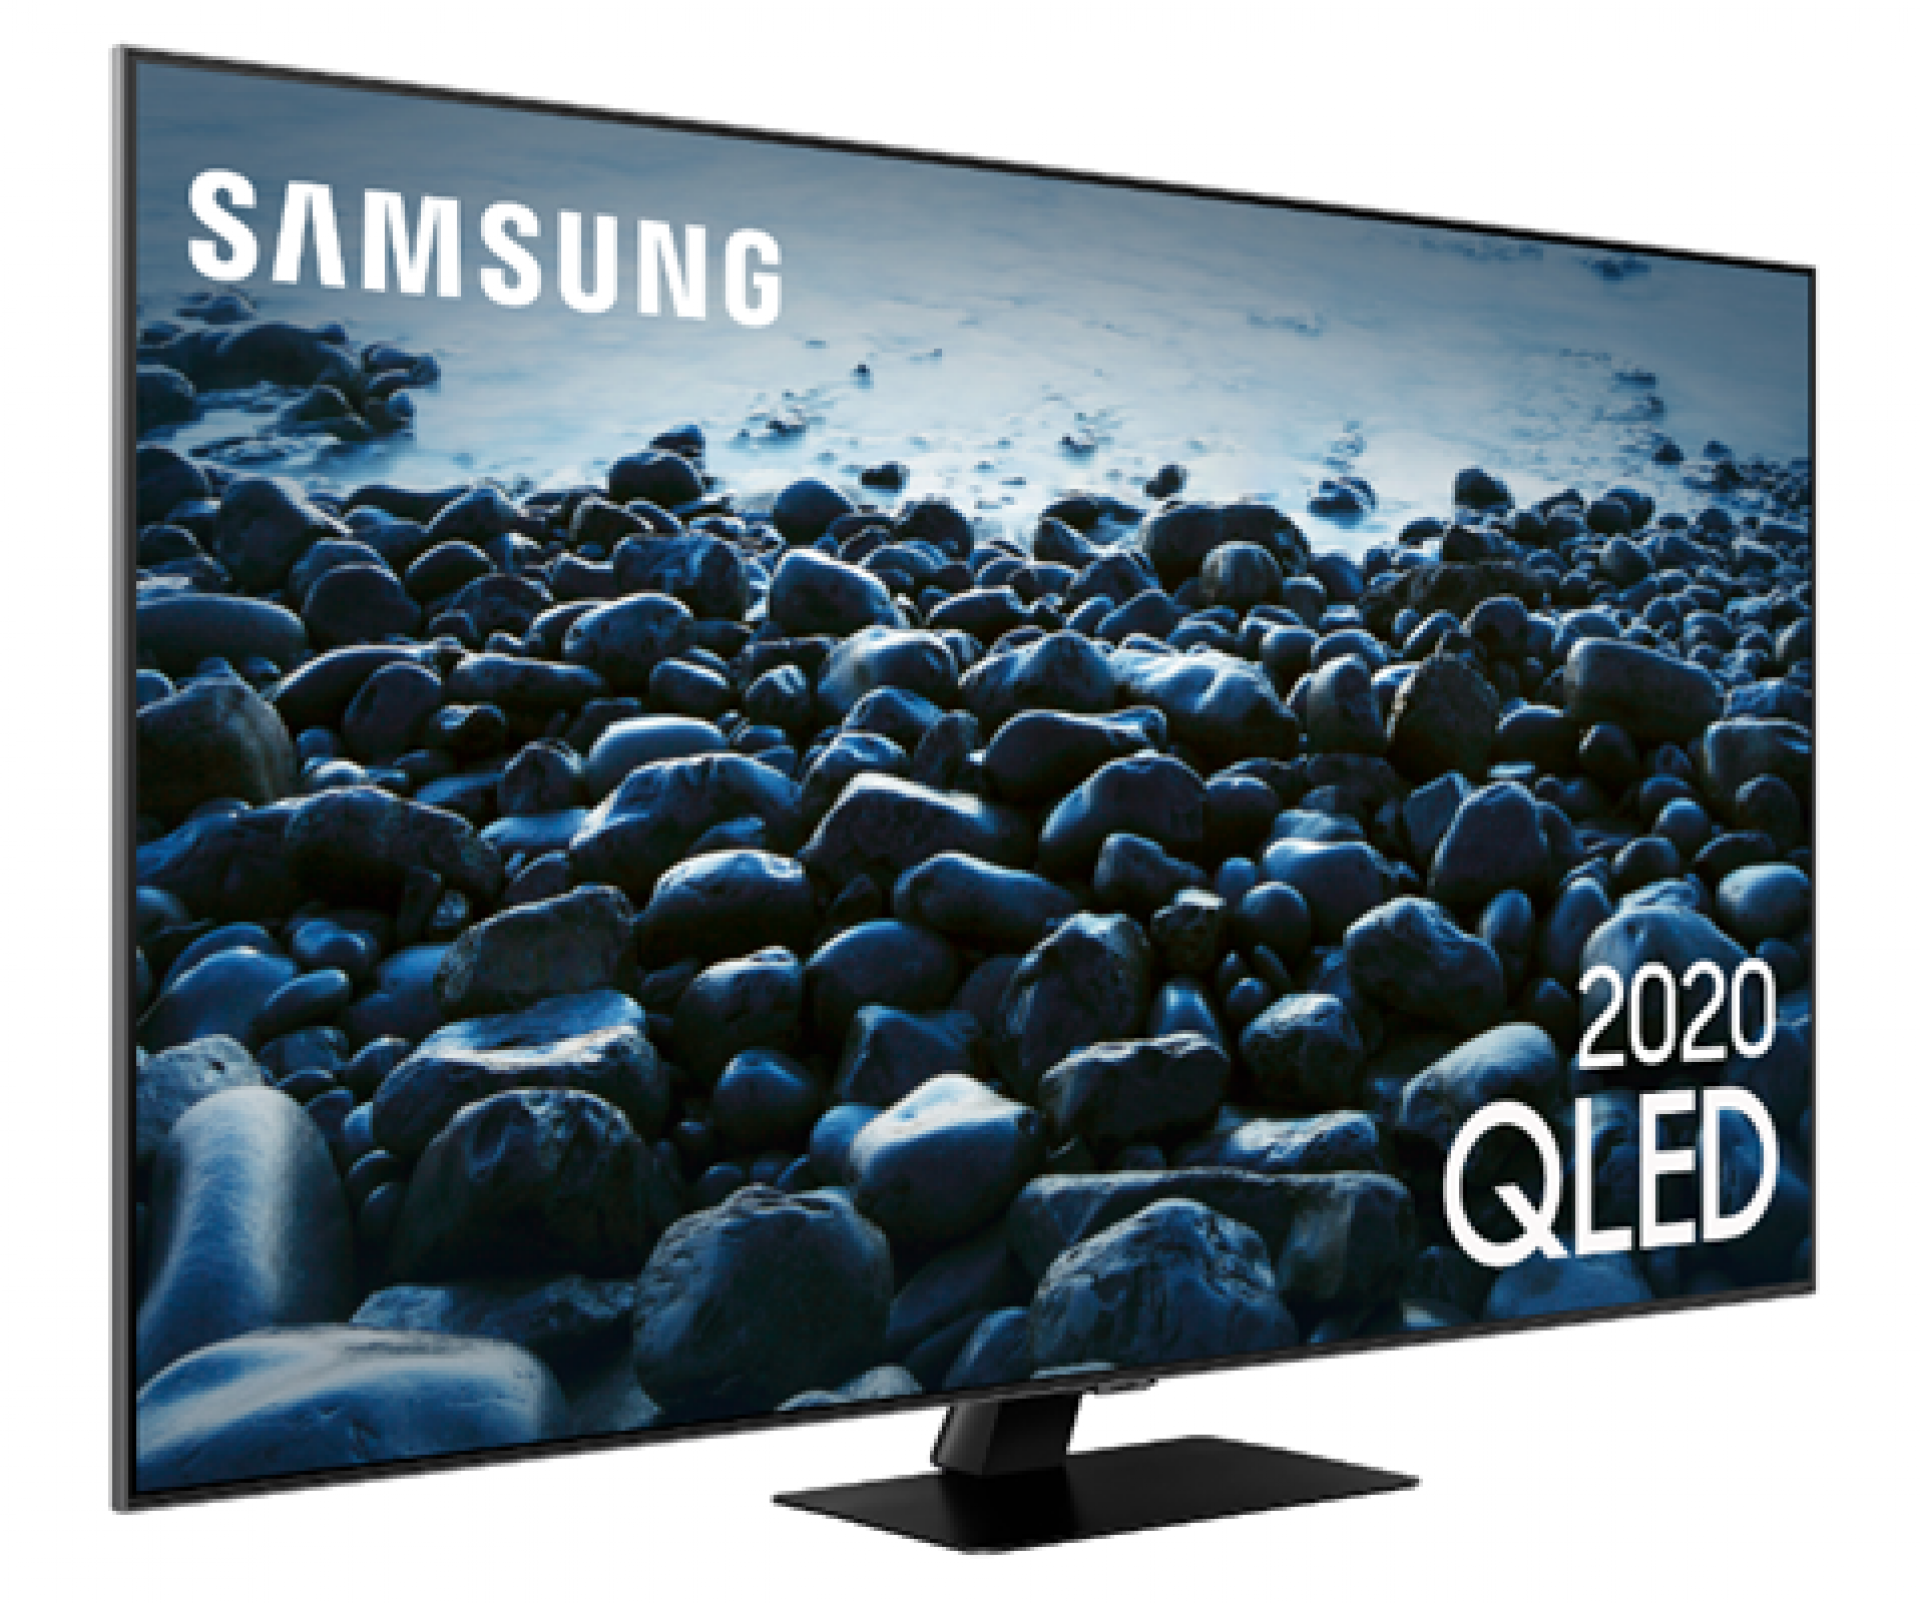 QLED traz qualidades de TV apreciadas pelos consumidores